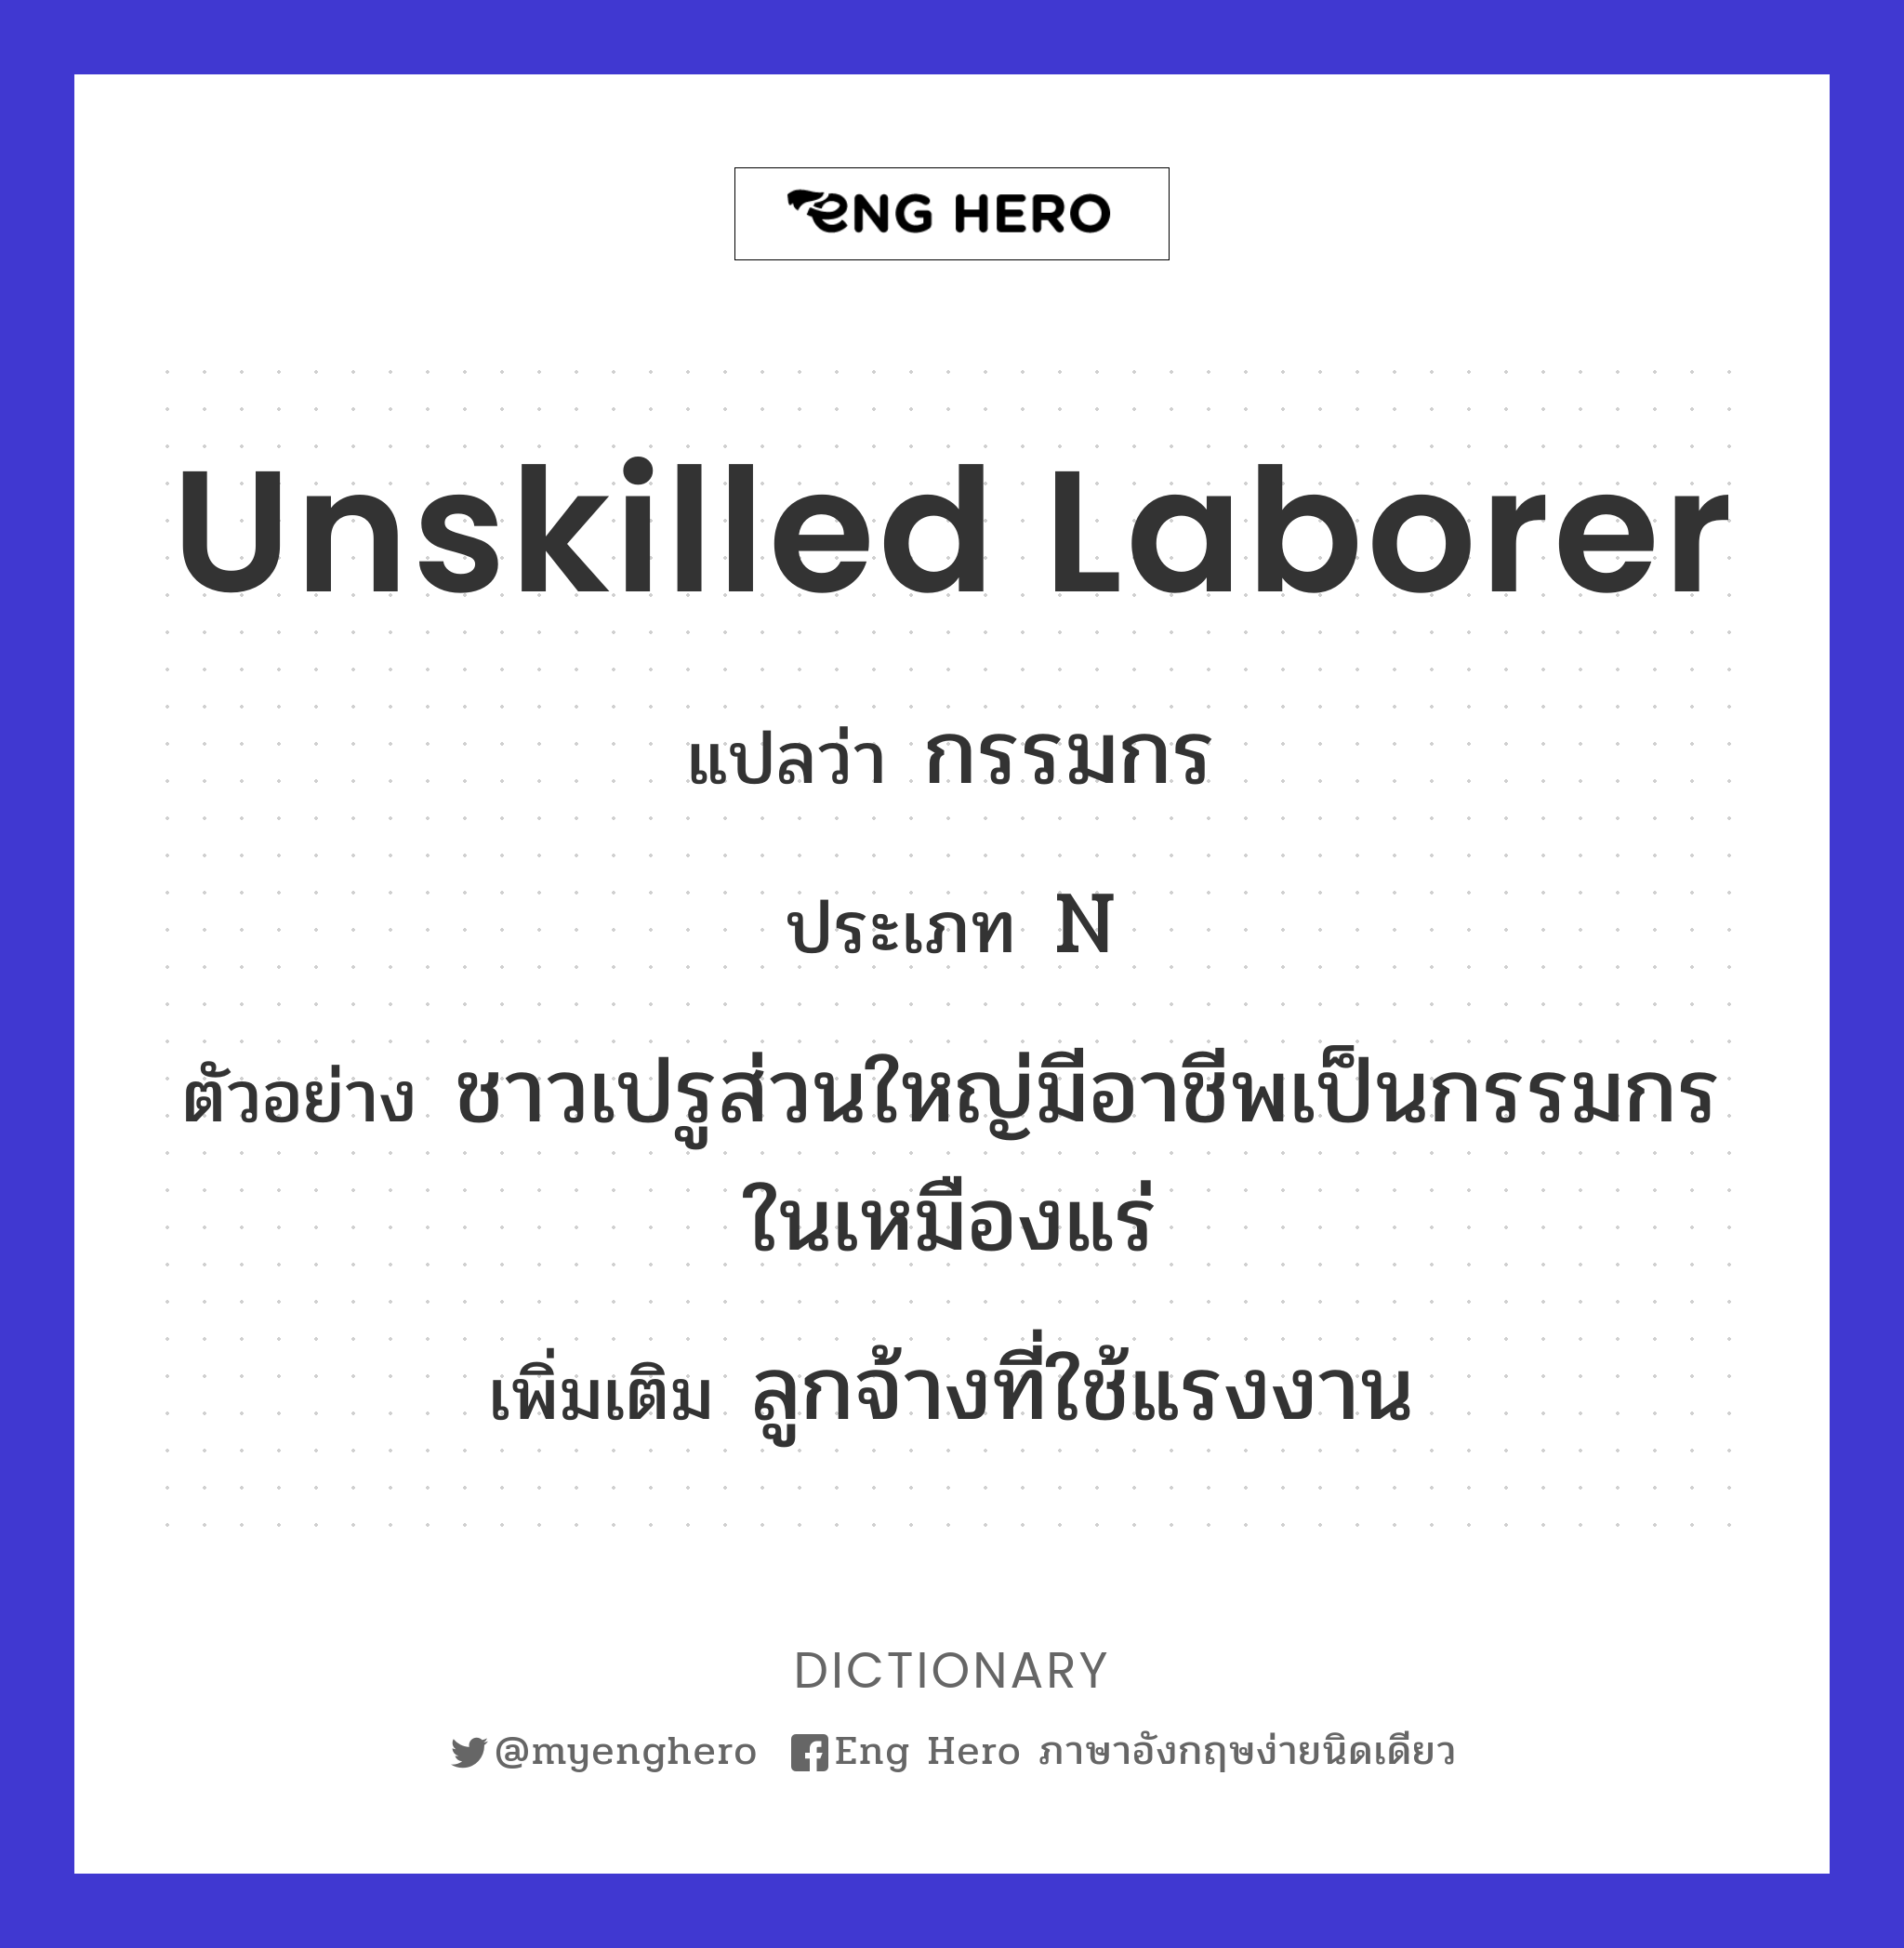 unskilled laborer